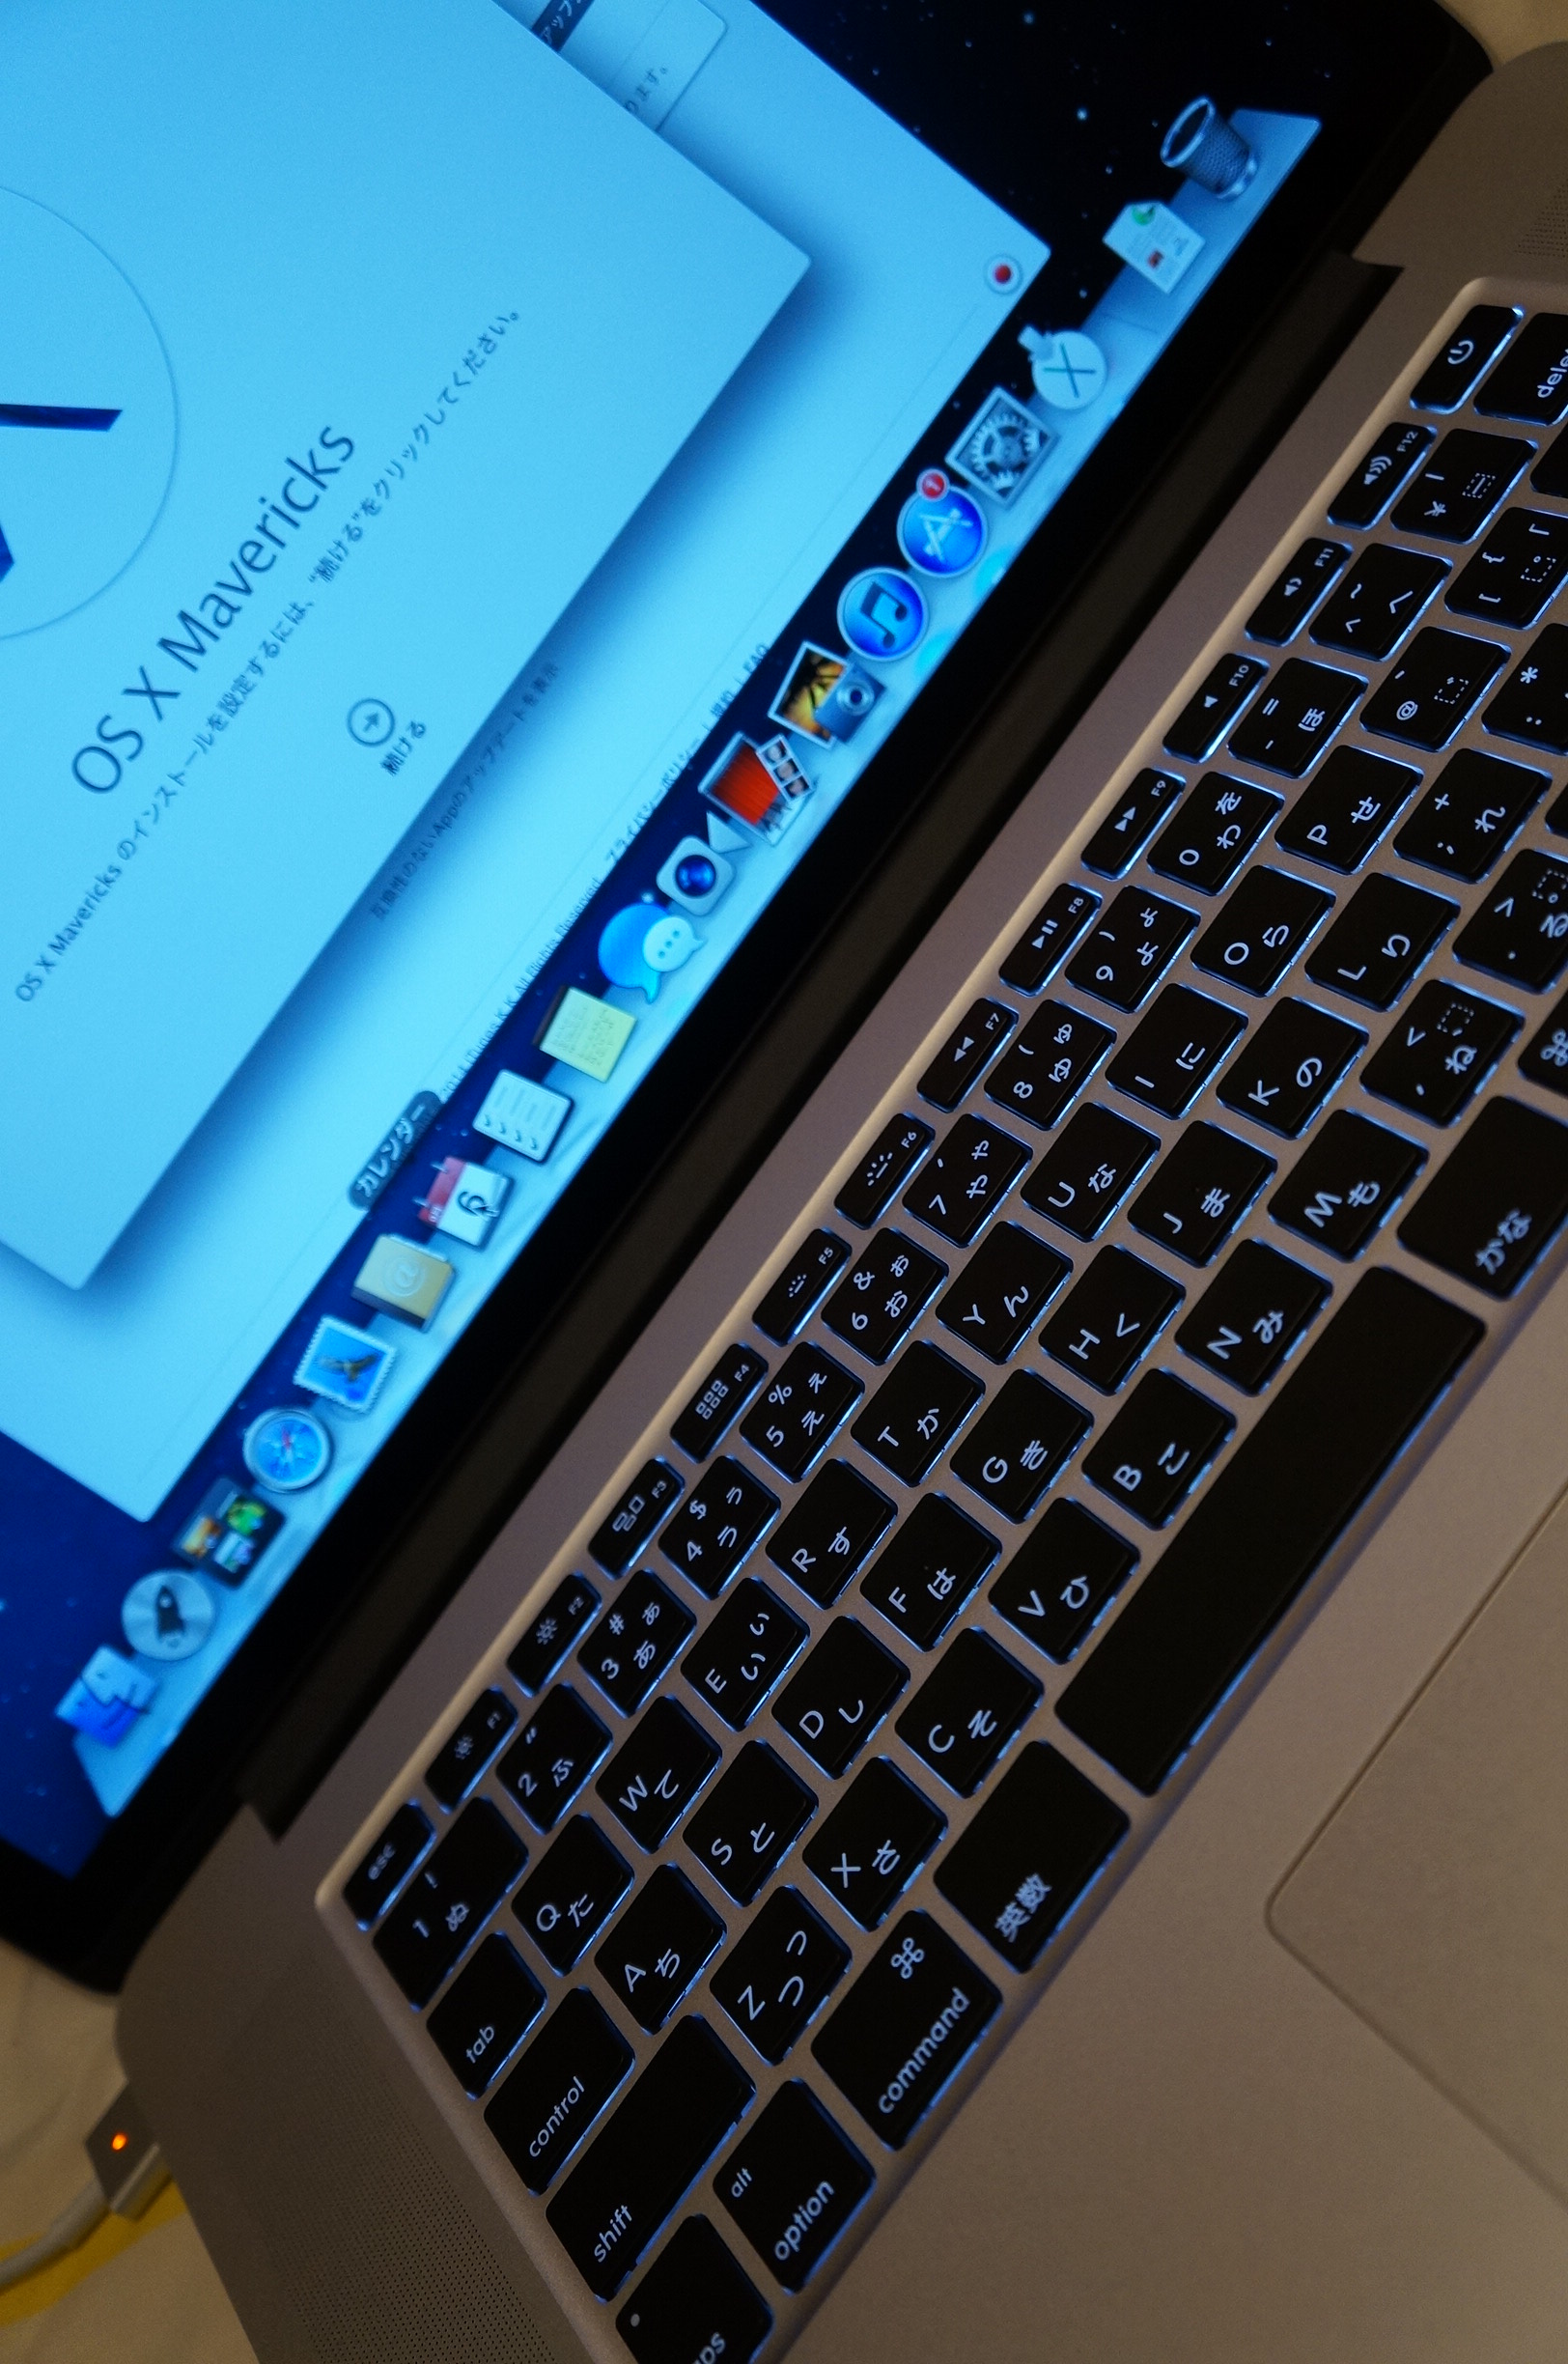 MacBook Pro 15インチ Retinaディスプレイモデル early 2013 を今更ながら購入。